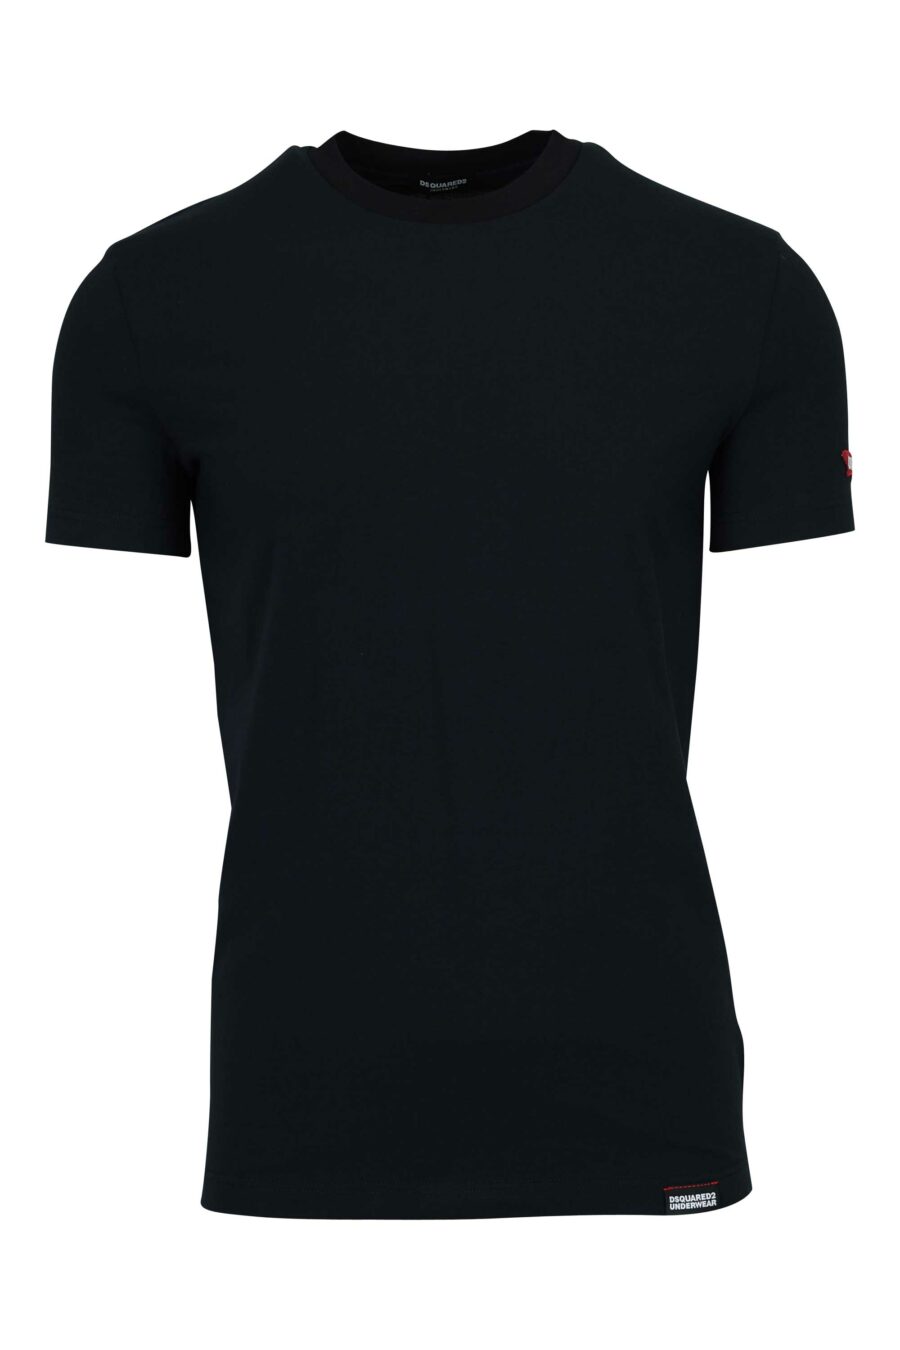 Schwarzes T-Shirt mit Logo-Etikett - 8032674811202